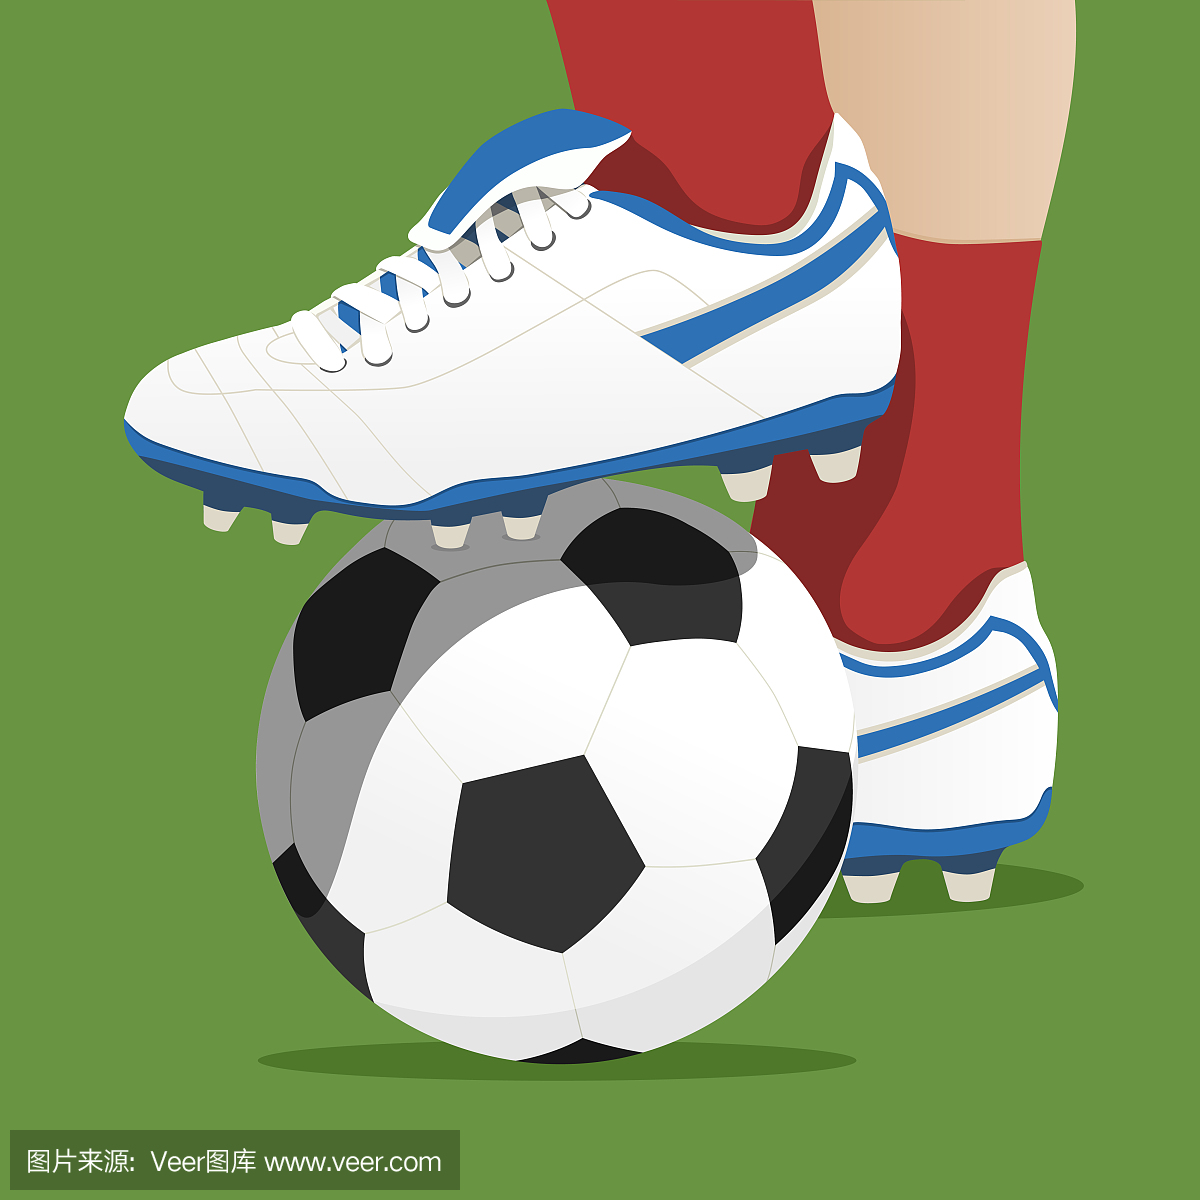 足球运动员在足球比赛中踩着球